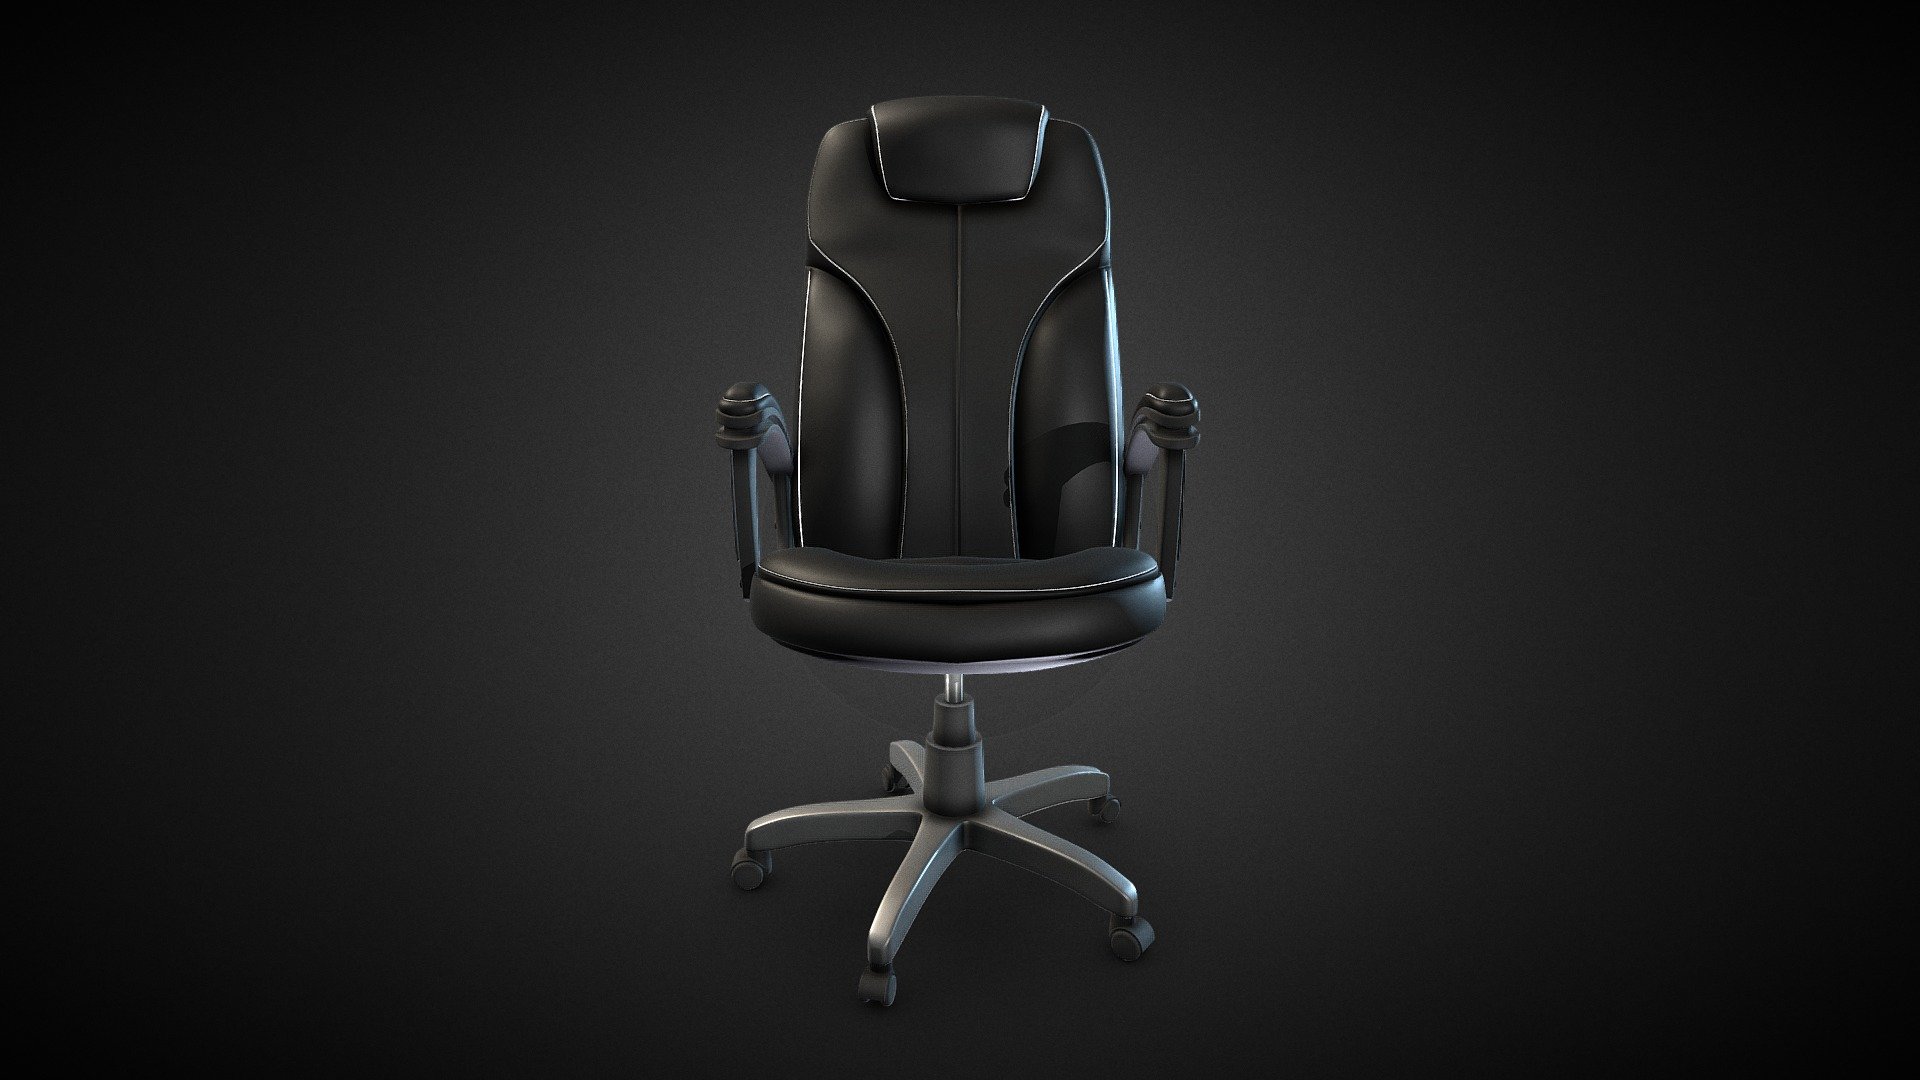 If You'd like more of those DM me at https://www.instagram.com/kj3dx/ - Office Chair - Buy Royalty Free 3D model by KJ (@kj3dx) 3d model